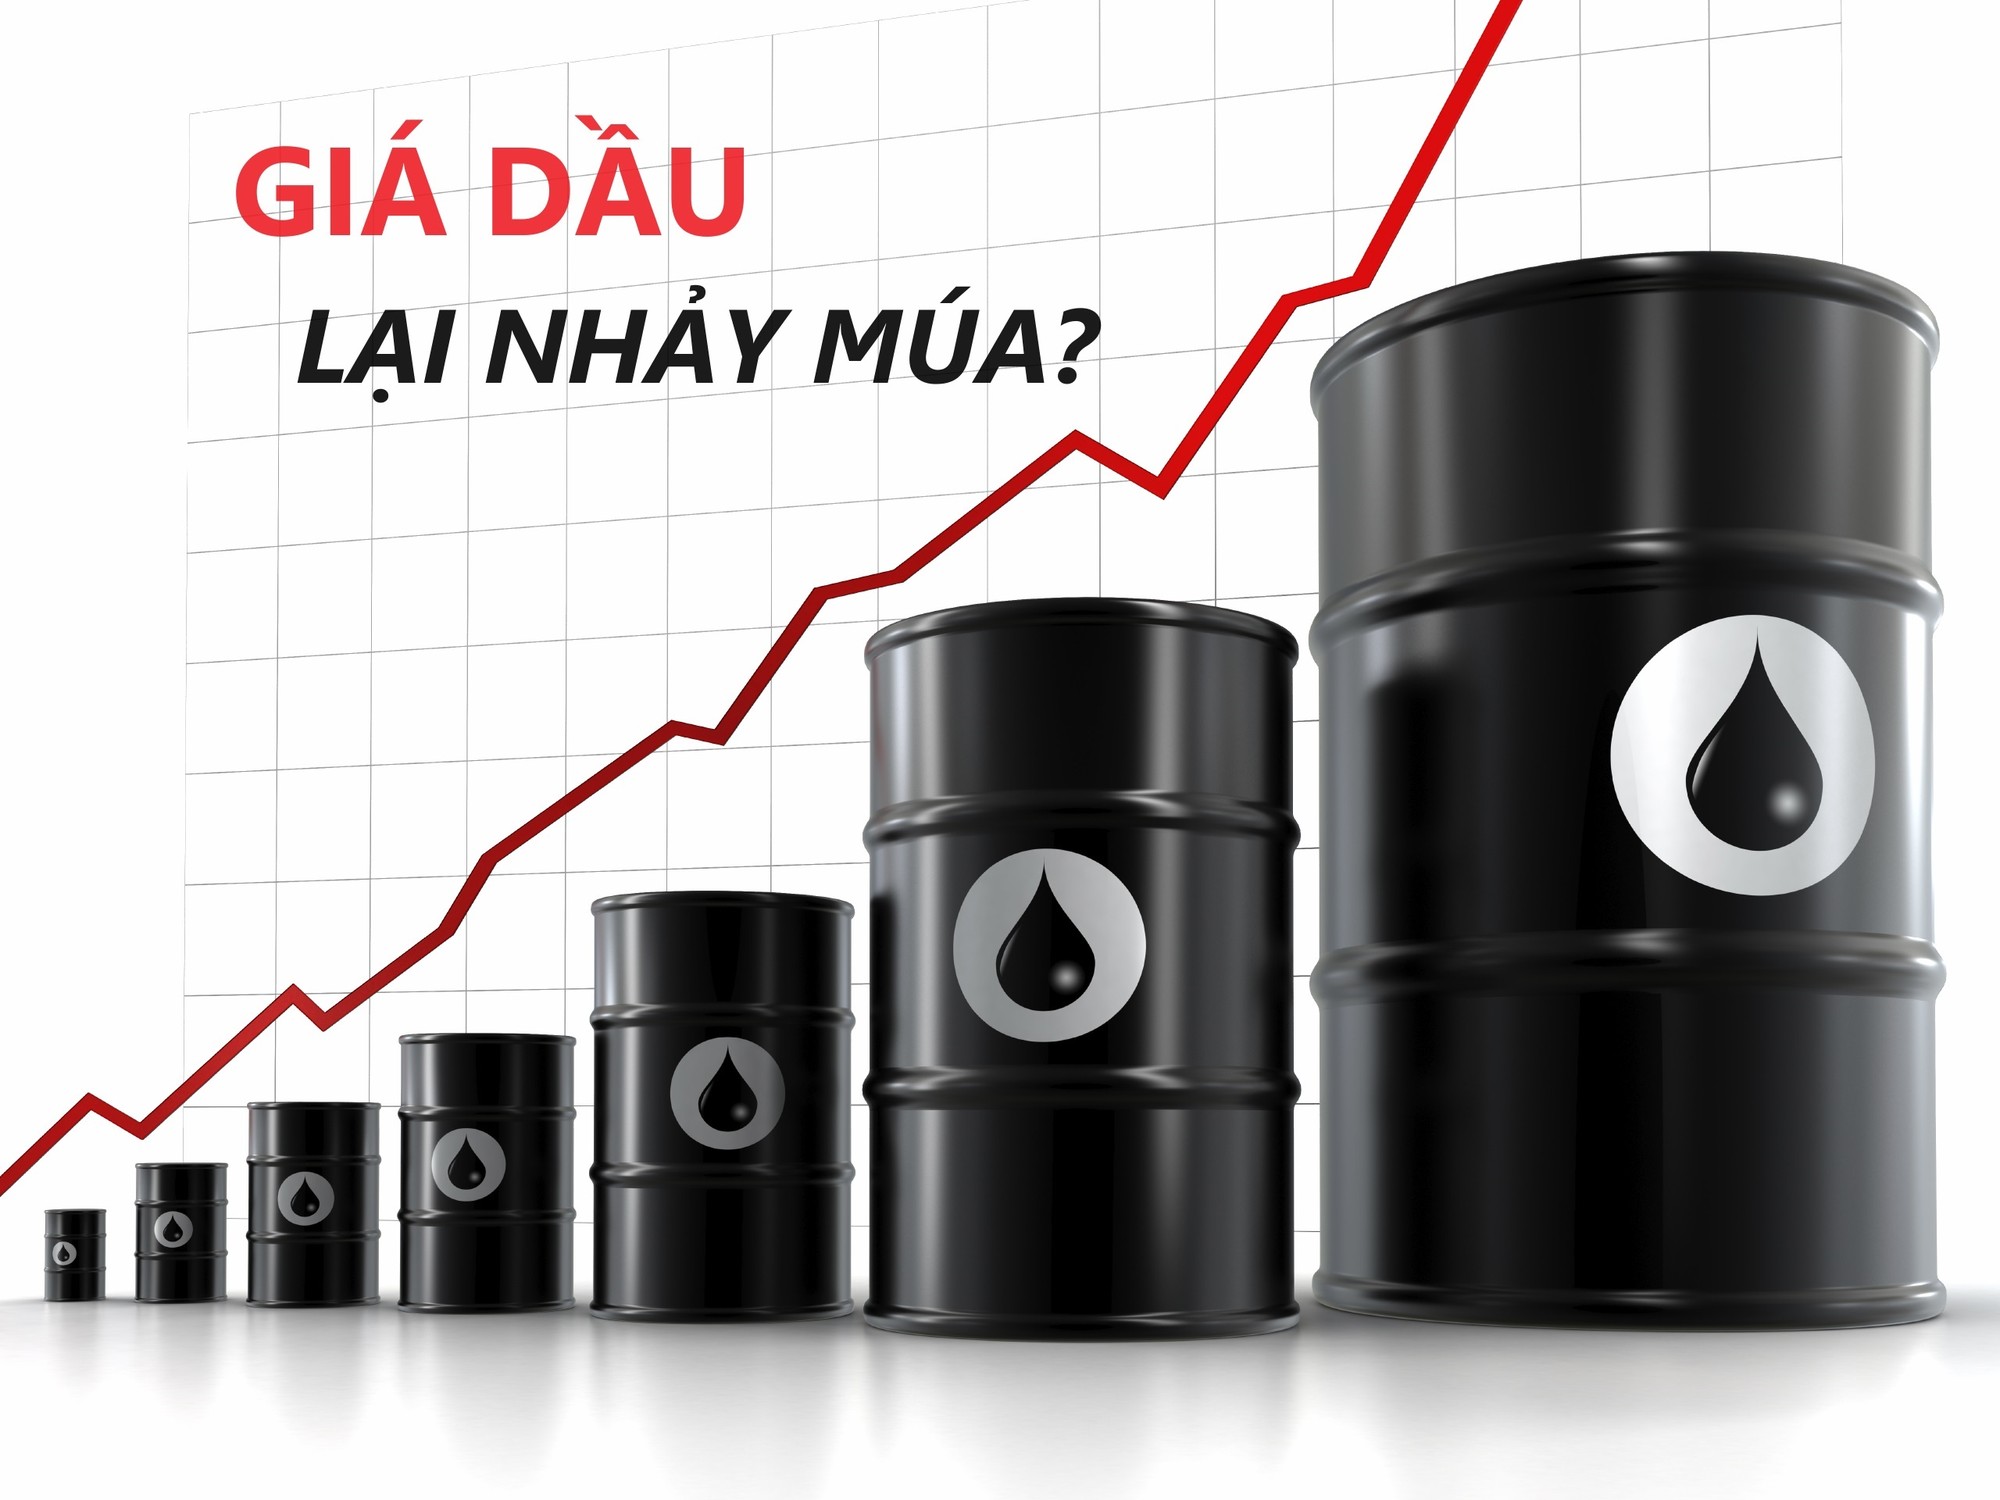 oil-price-increase-3845.jpg